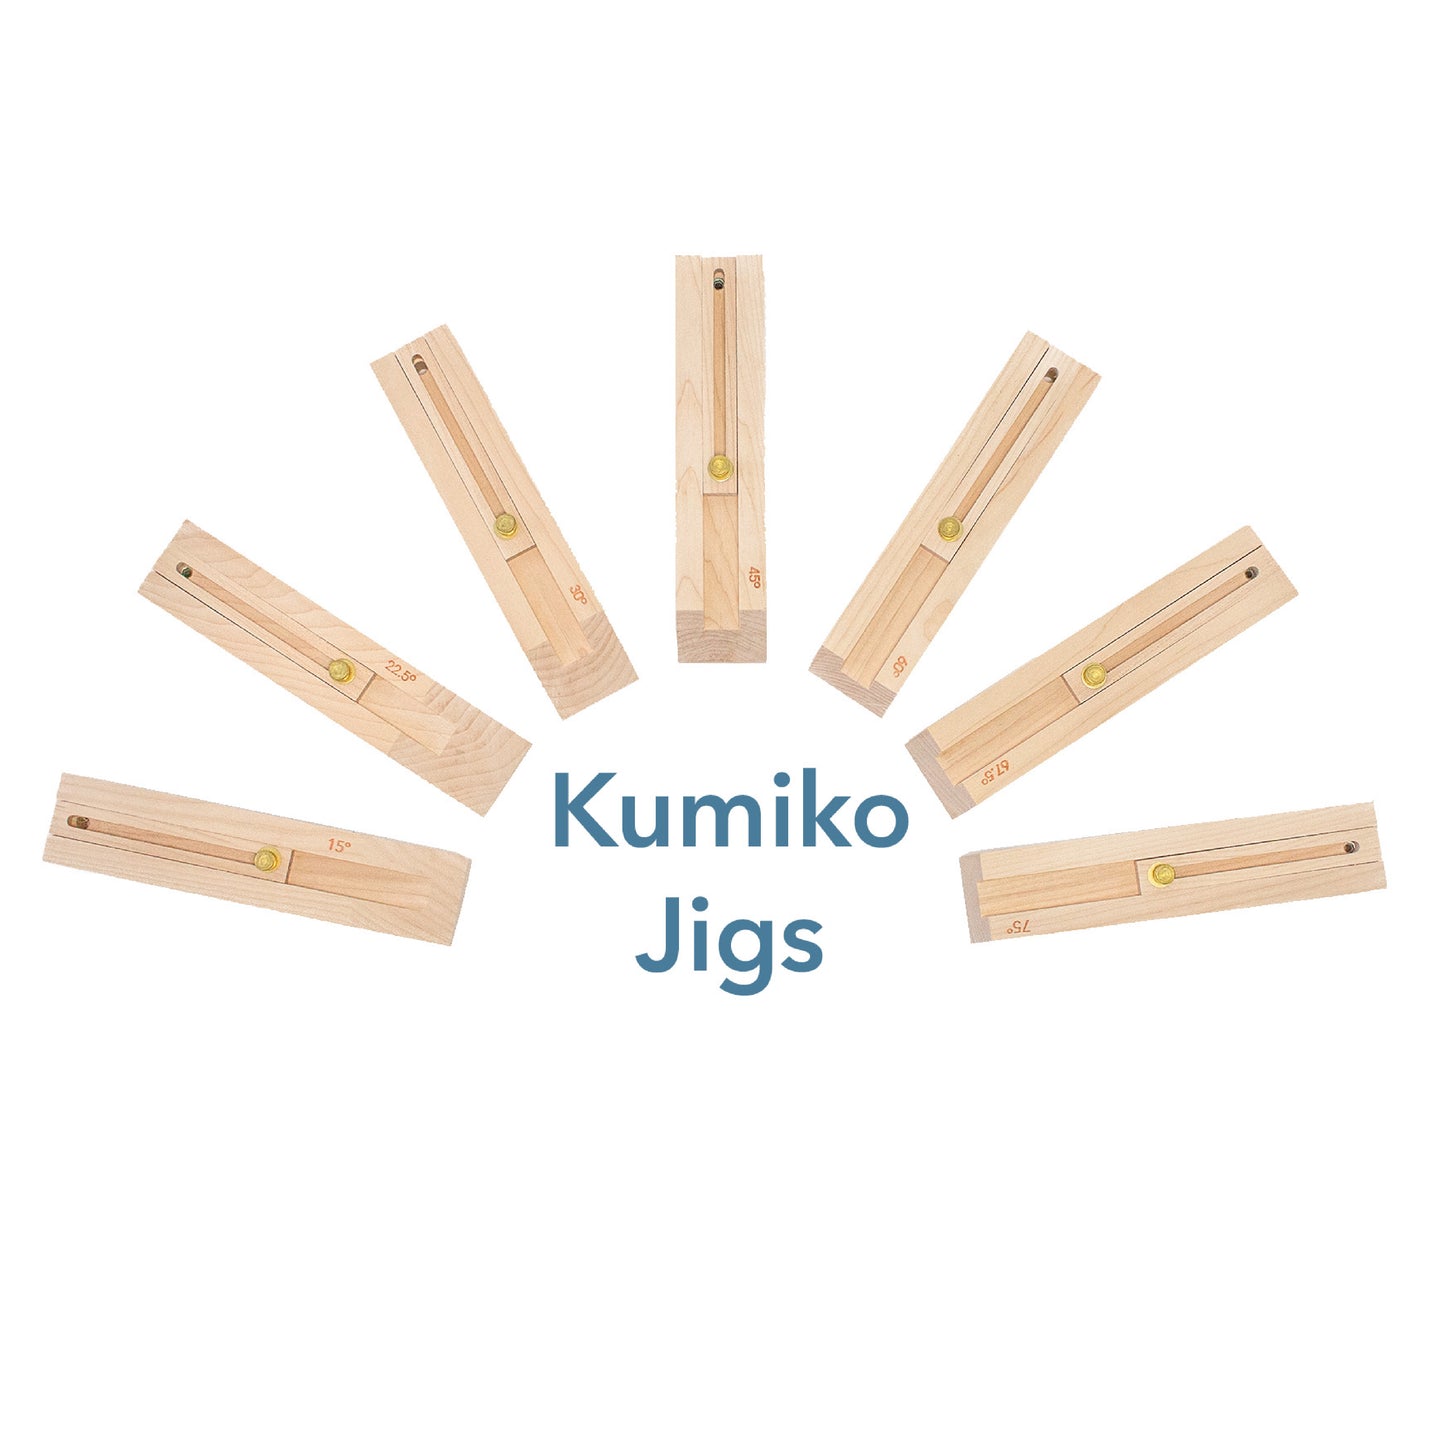 Kumiko Jigs